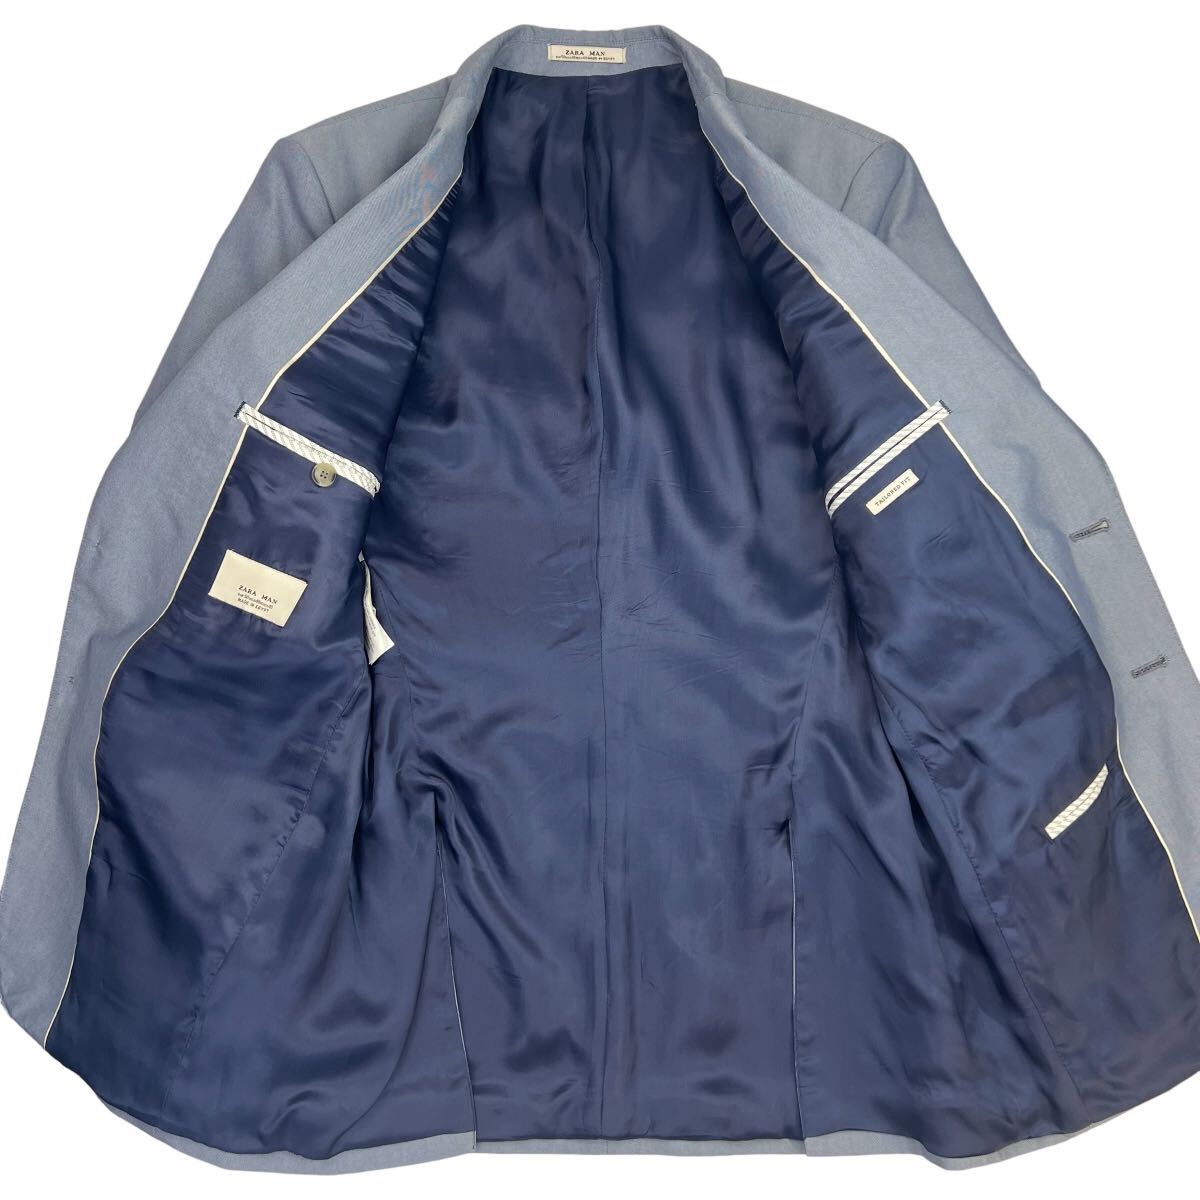 極美品 ZARA MAN ザラマン 2Bテーラードジャケット サイズ50/XL相当 ブルー 美シルエット 春夏 通年可能 TALORED FIT 人気 大きめ A2384_画像4